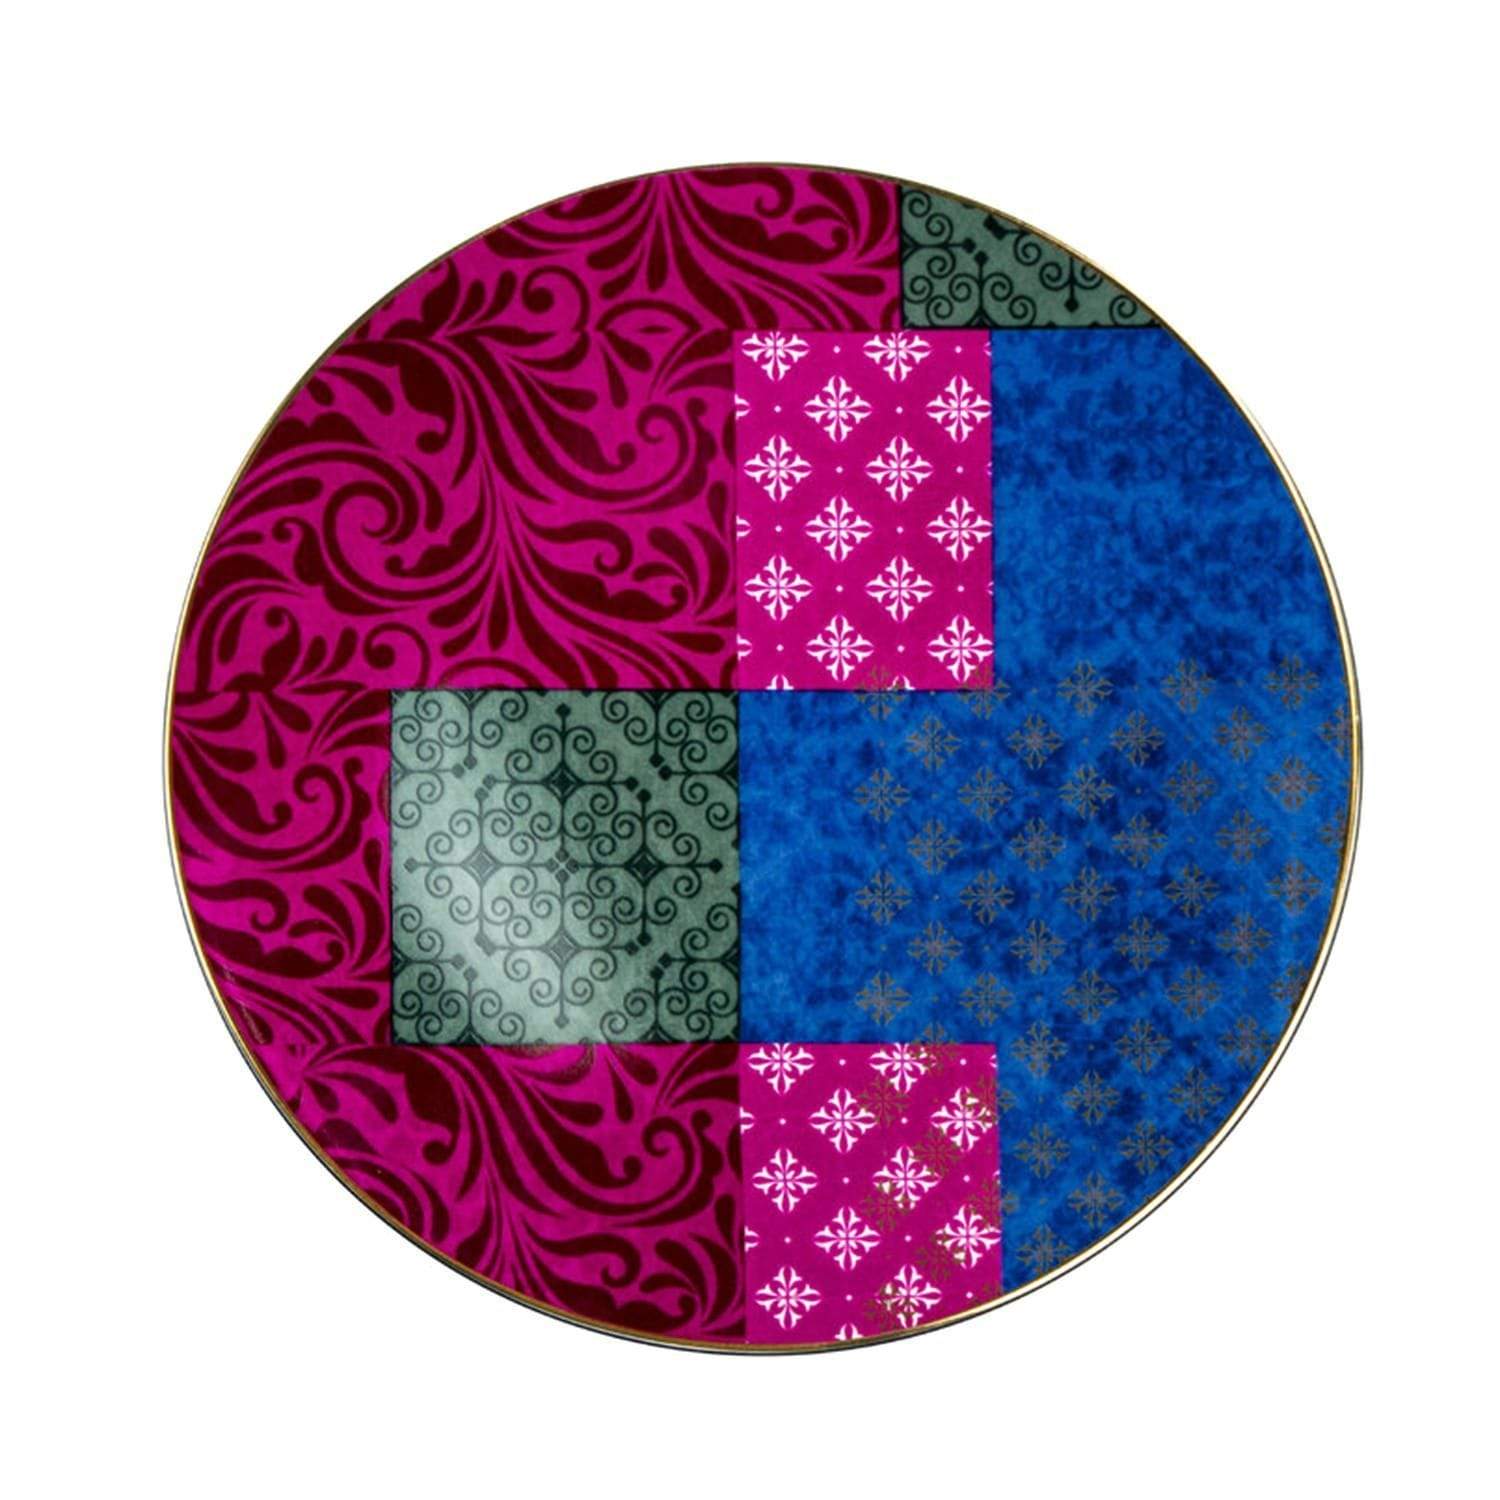 Porland Porselen Evoke Design 1 27 cm Flat Plate - Multicolour - 04ALM002720 - Jashanmal Home